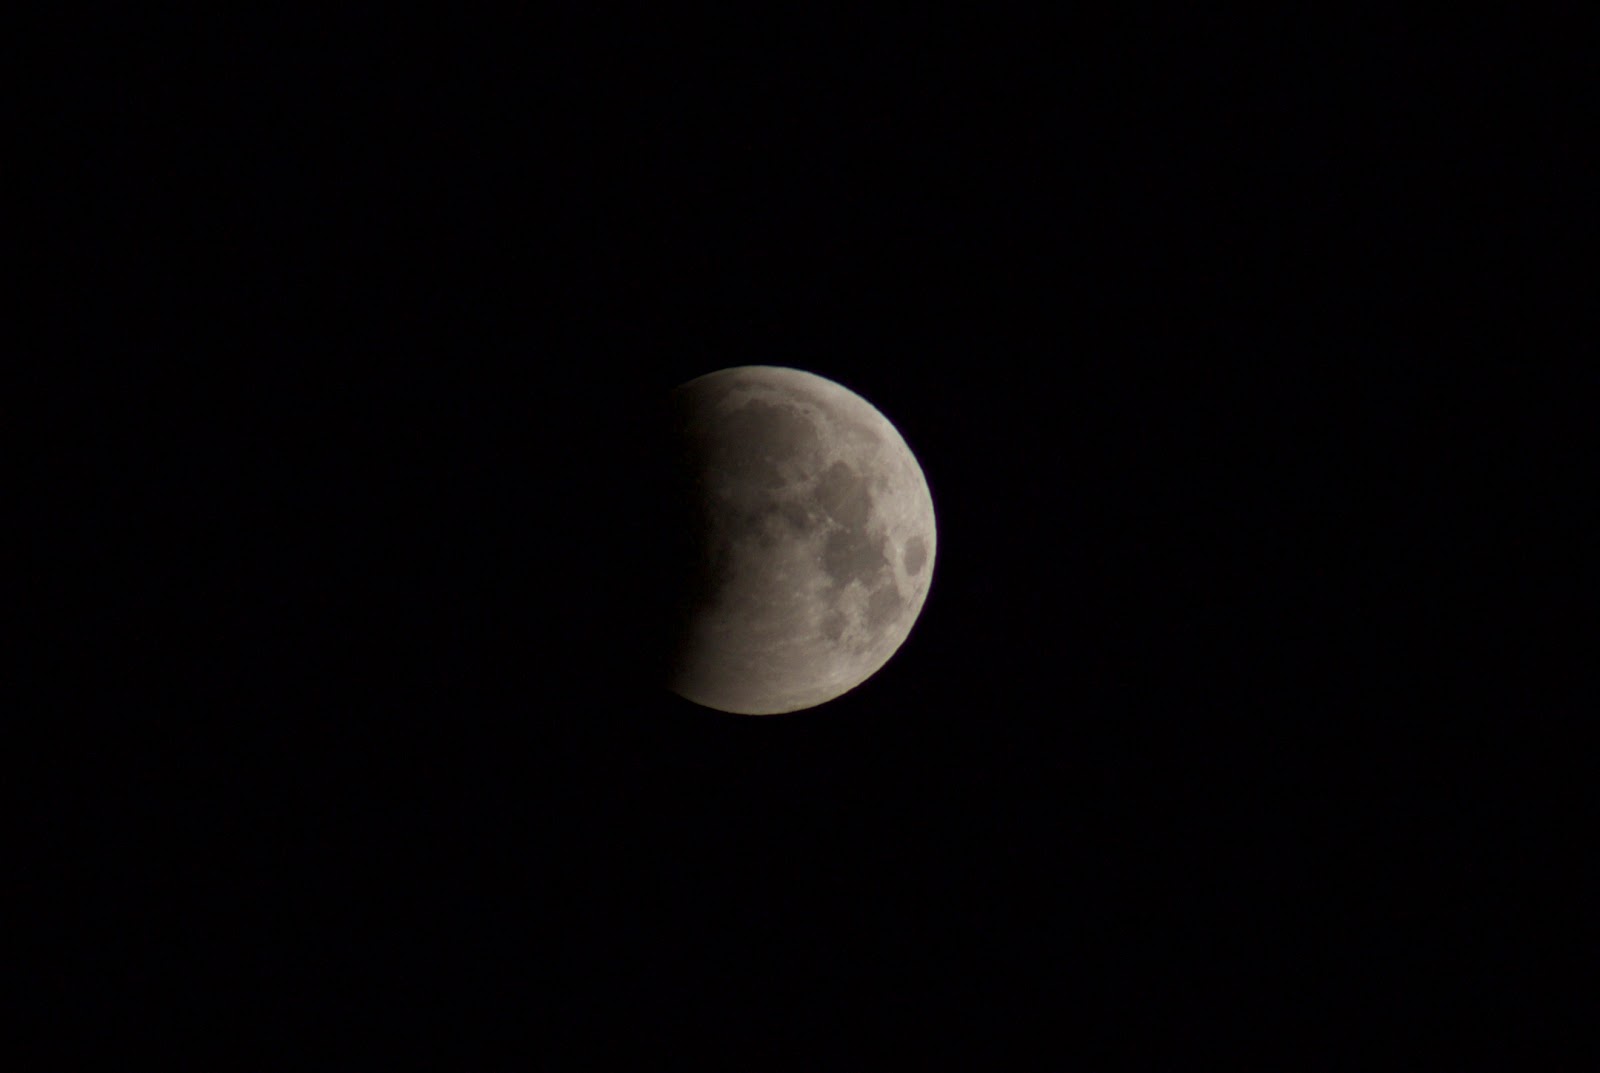 lunar eclipse photo april 4, 2015